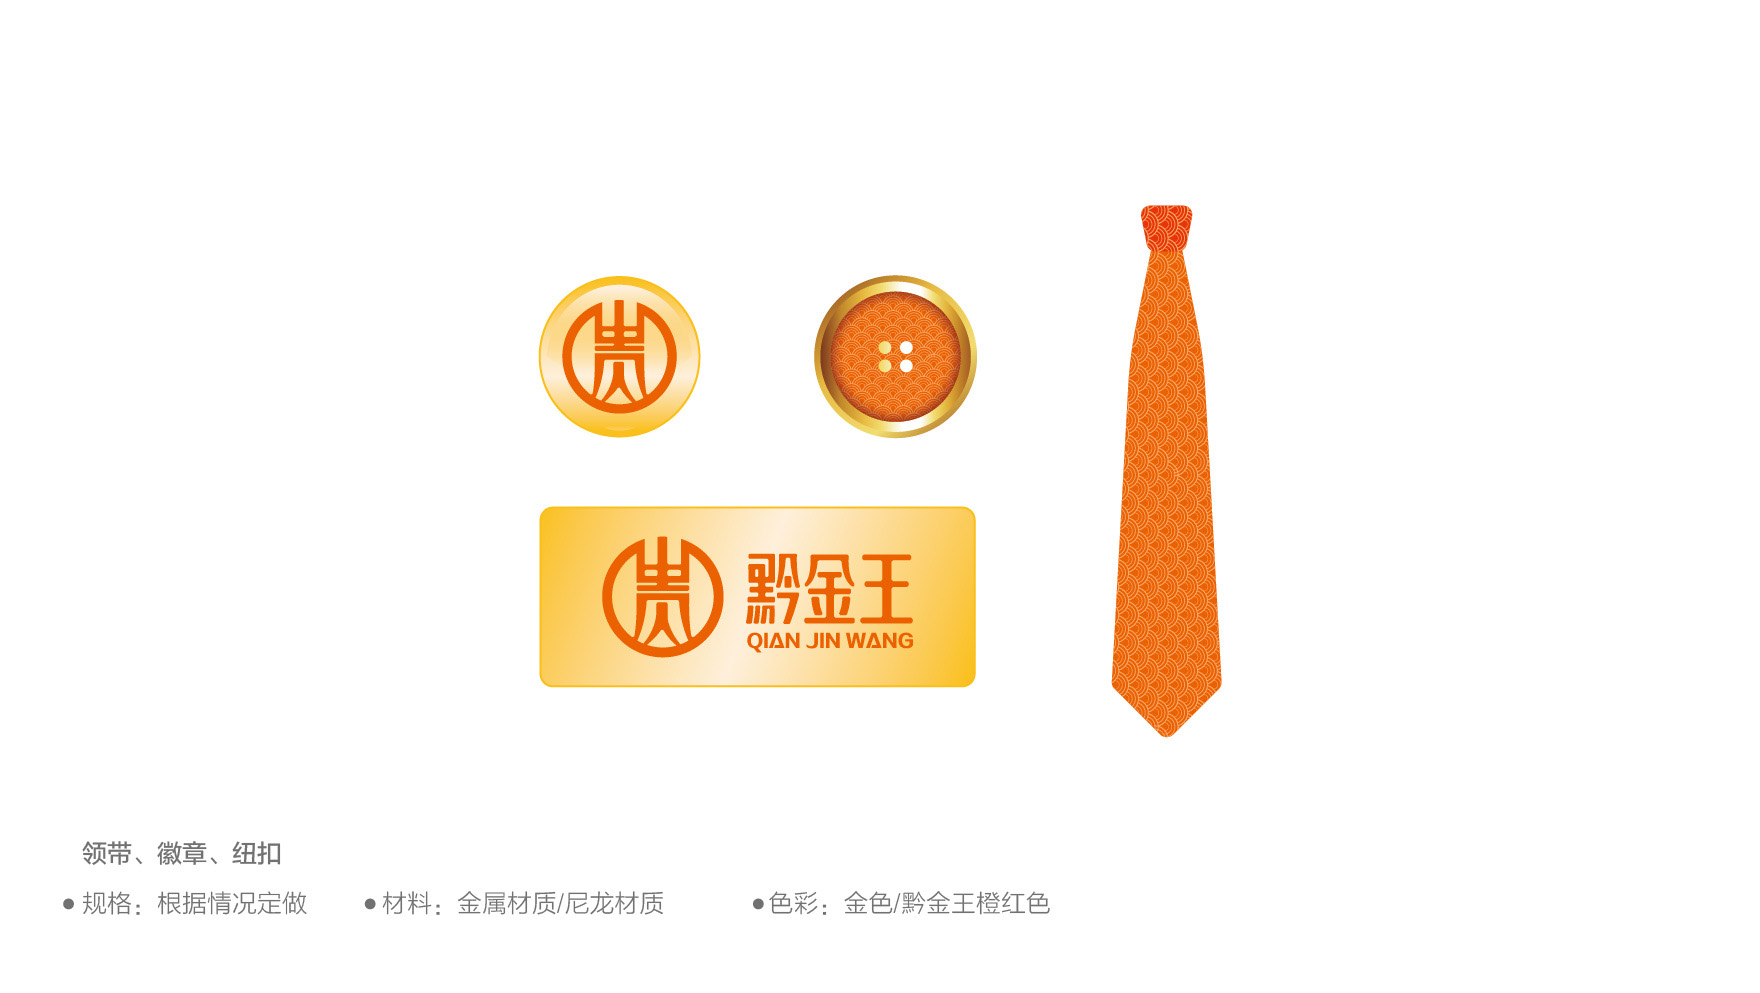 佛山金融logo设计作品案例欣赏-黔金王品牌策划